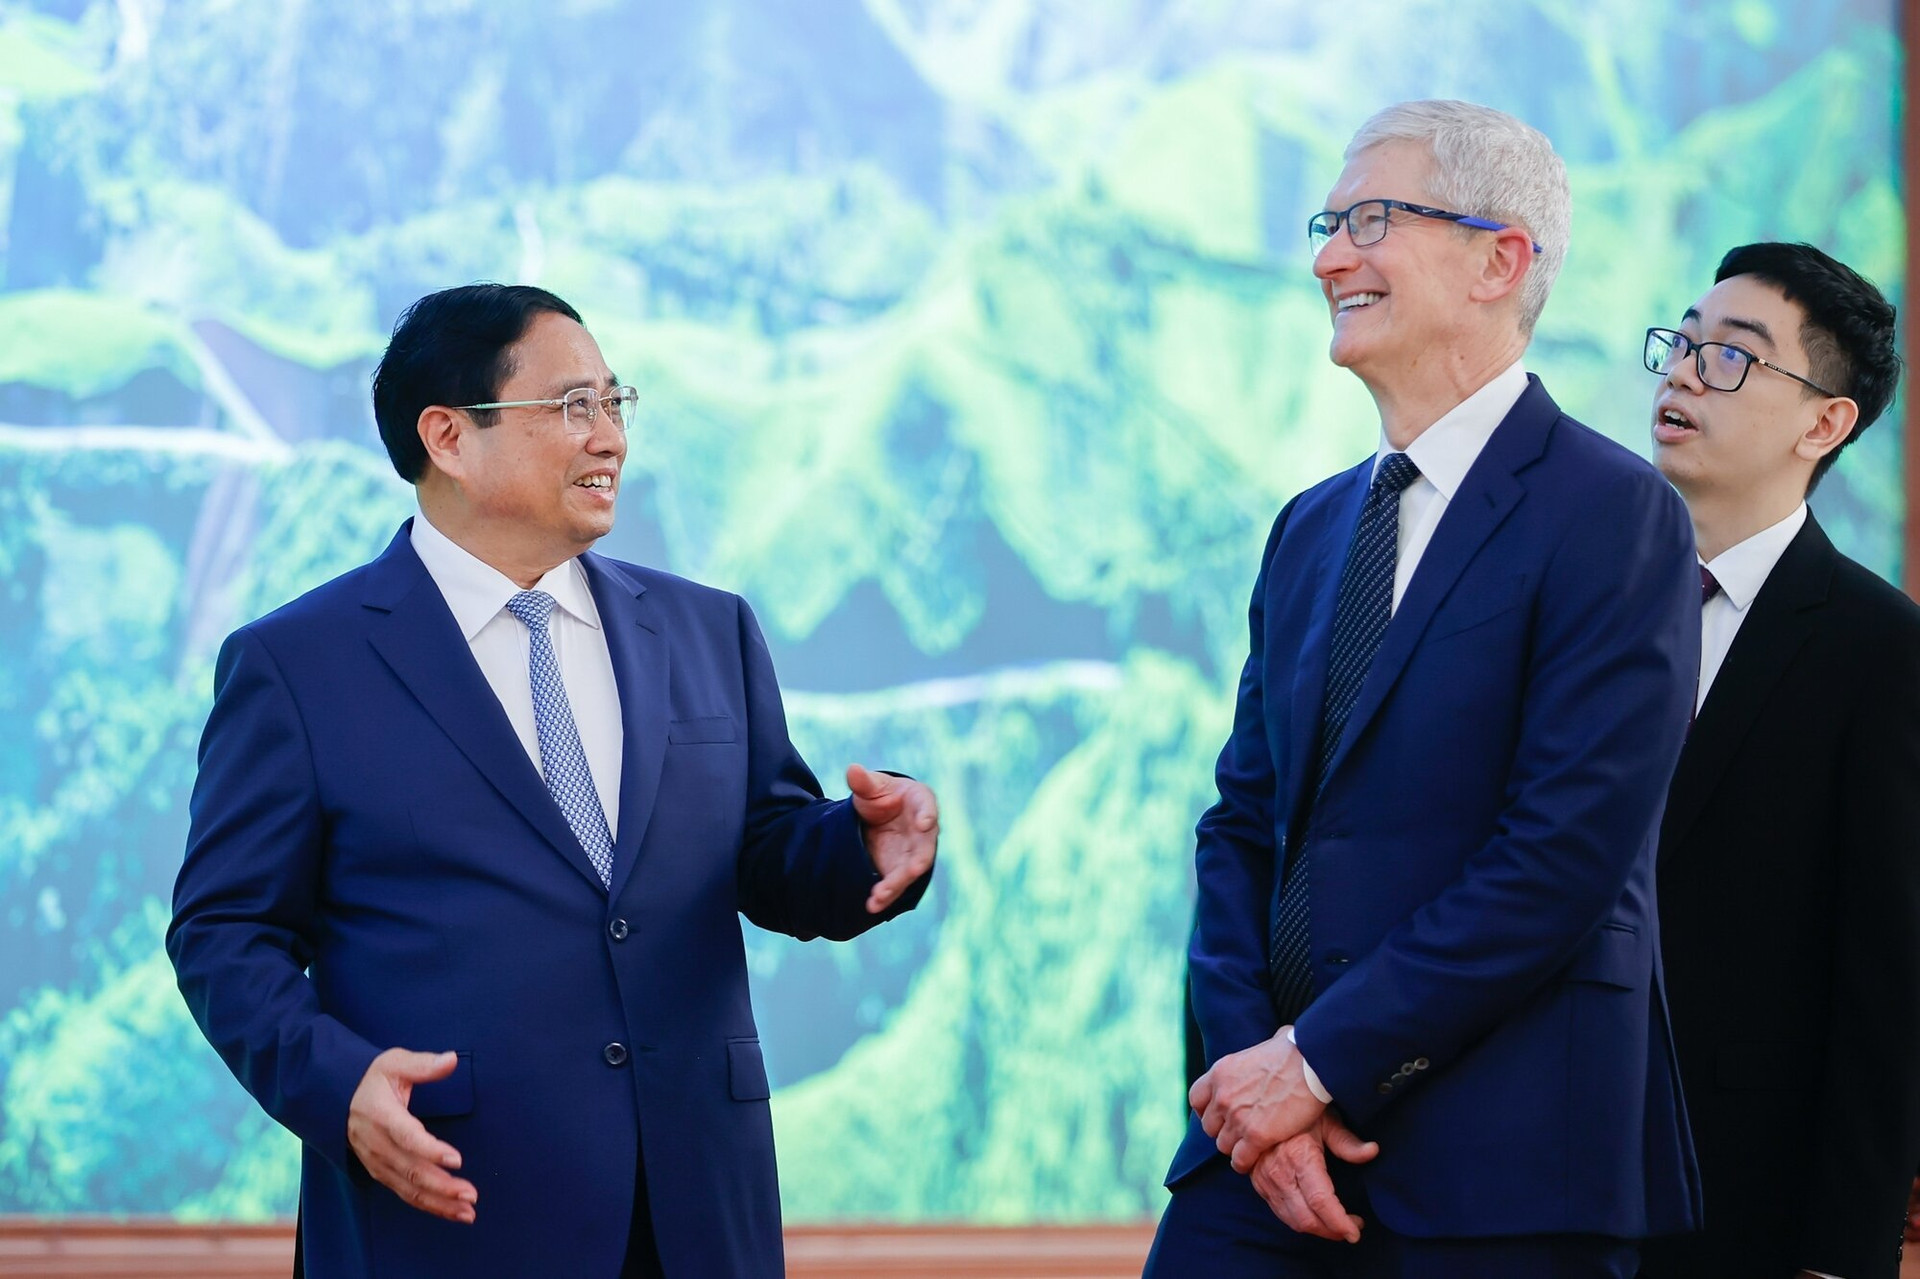 Tại cuộc gặp, CEO Apple Tim Cook đánh giá cao những chia sẻ của Thủ tướng về các định hướng, mục tiêu phát triển của Việt Nam, mong muốn thúc đẩy hơn nữa các hoạt động hợp tác, đầu tư chất lượng cao tại Việt Nam. (Ảnh: Đoàn Bắc/VGP)